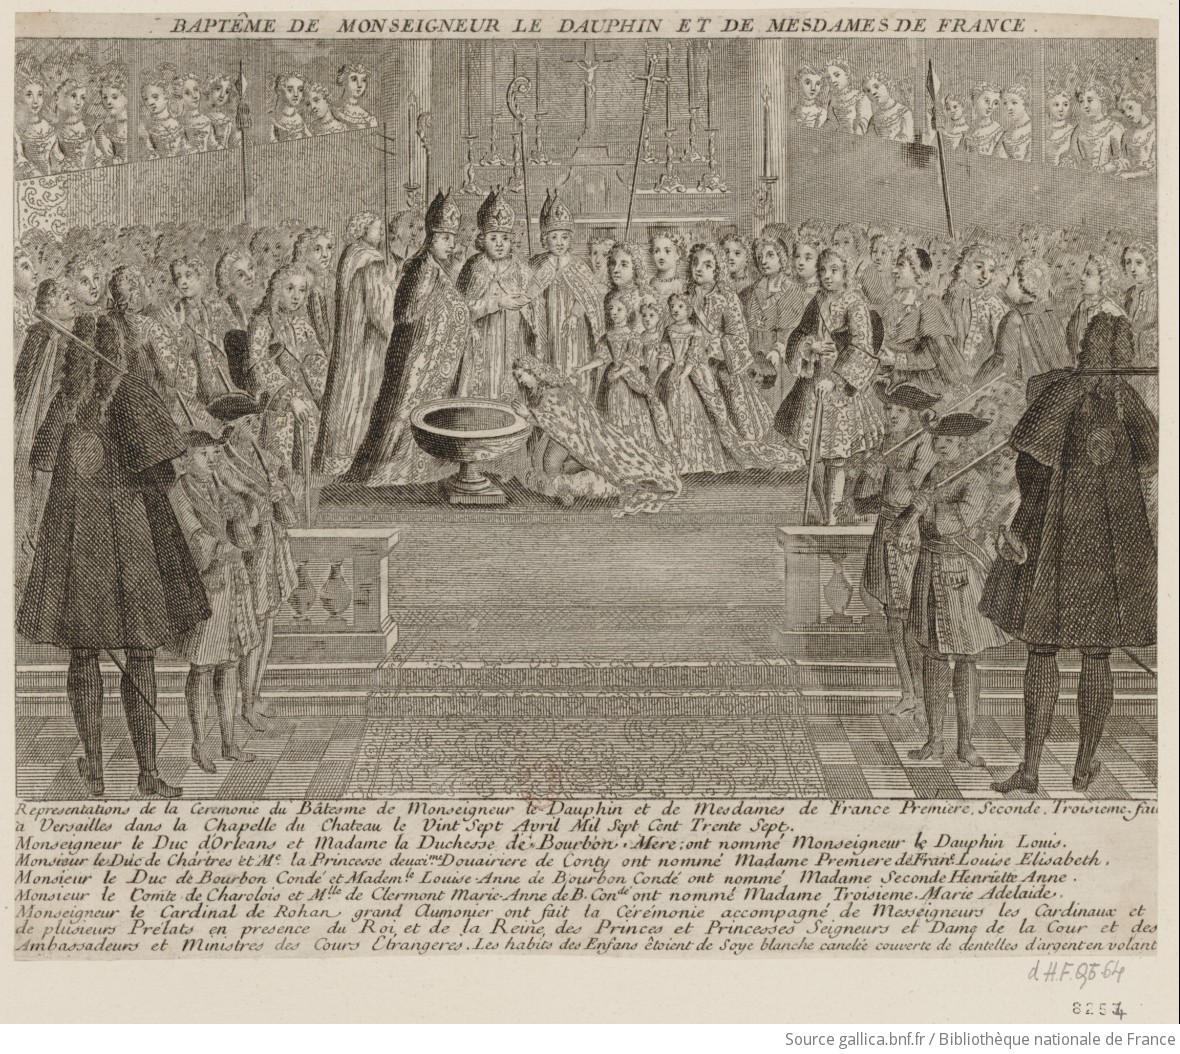 03 avril 1770: Baptême de Louise-Adélaïde de Bourbon F1